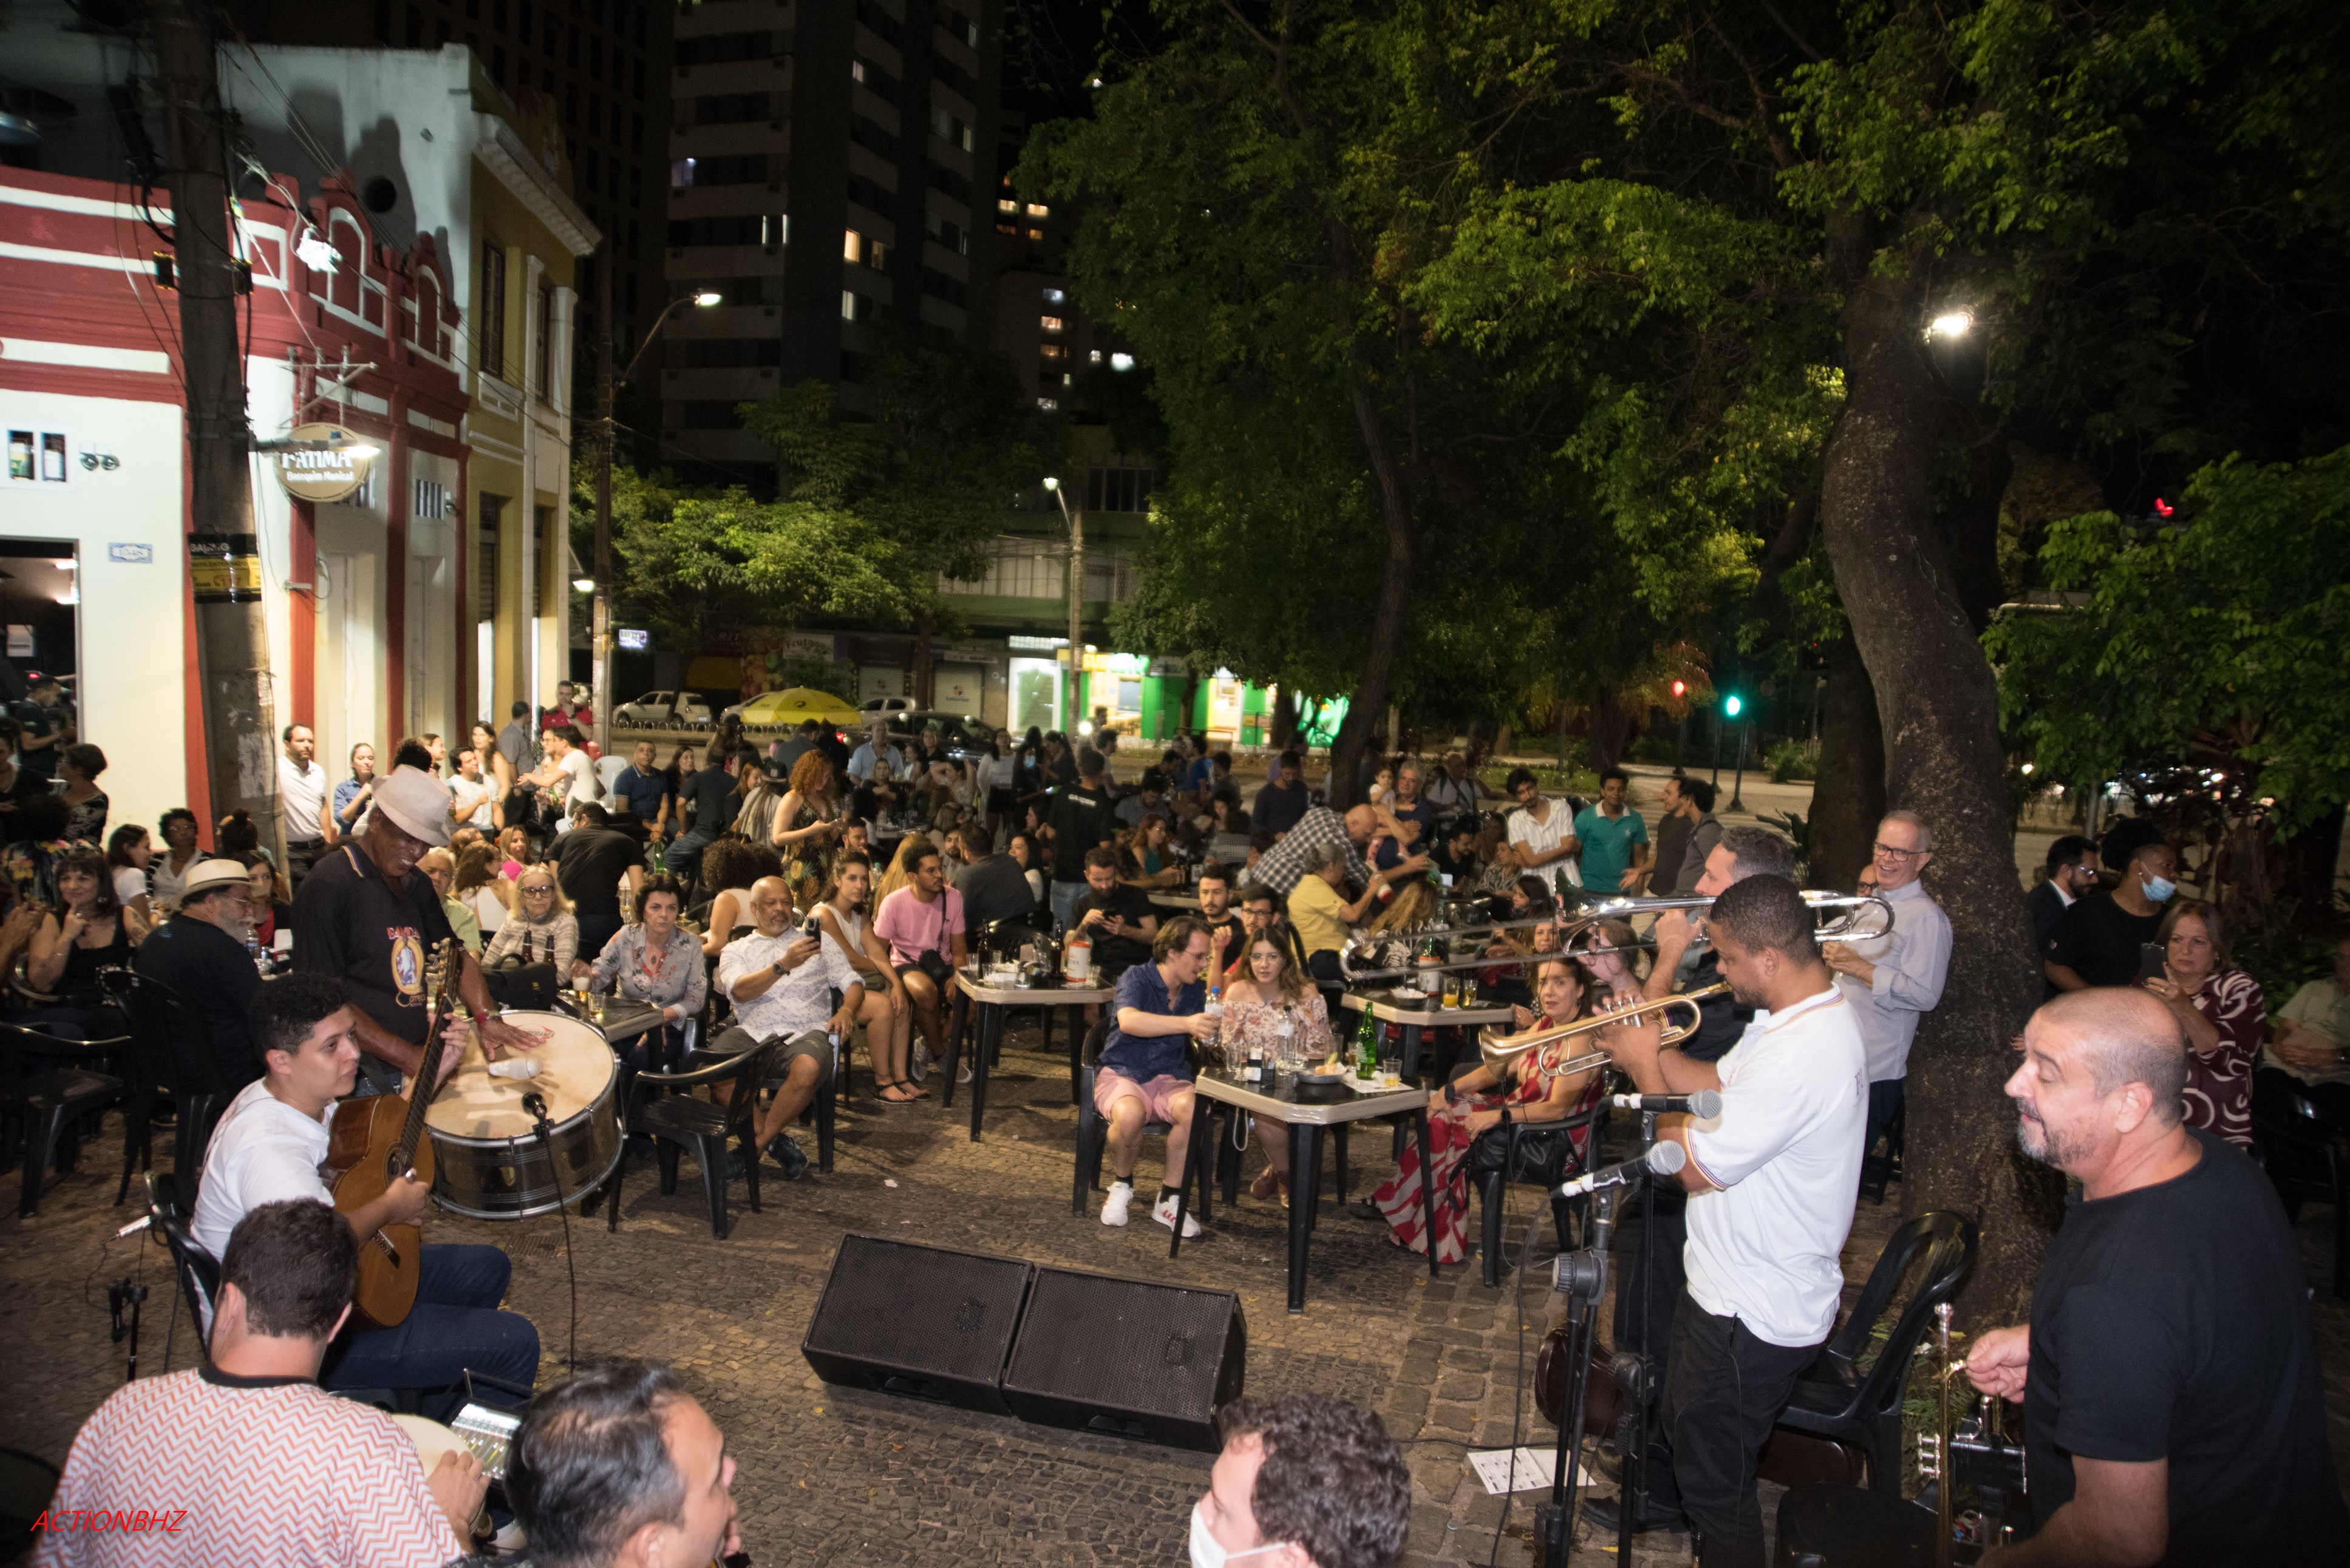 Clube do Choro de Belo Horizonte: Parceria entre Clube do Choro de BH e SESC  MG oferece uma grande programação comemorando a Semana Nacional do Choro  2017.